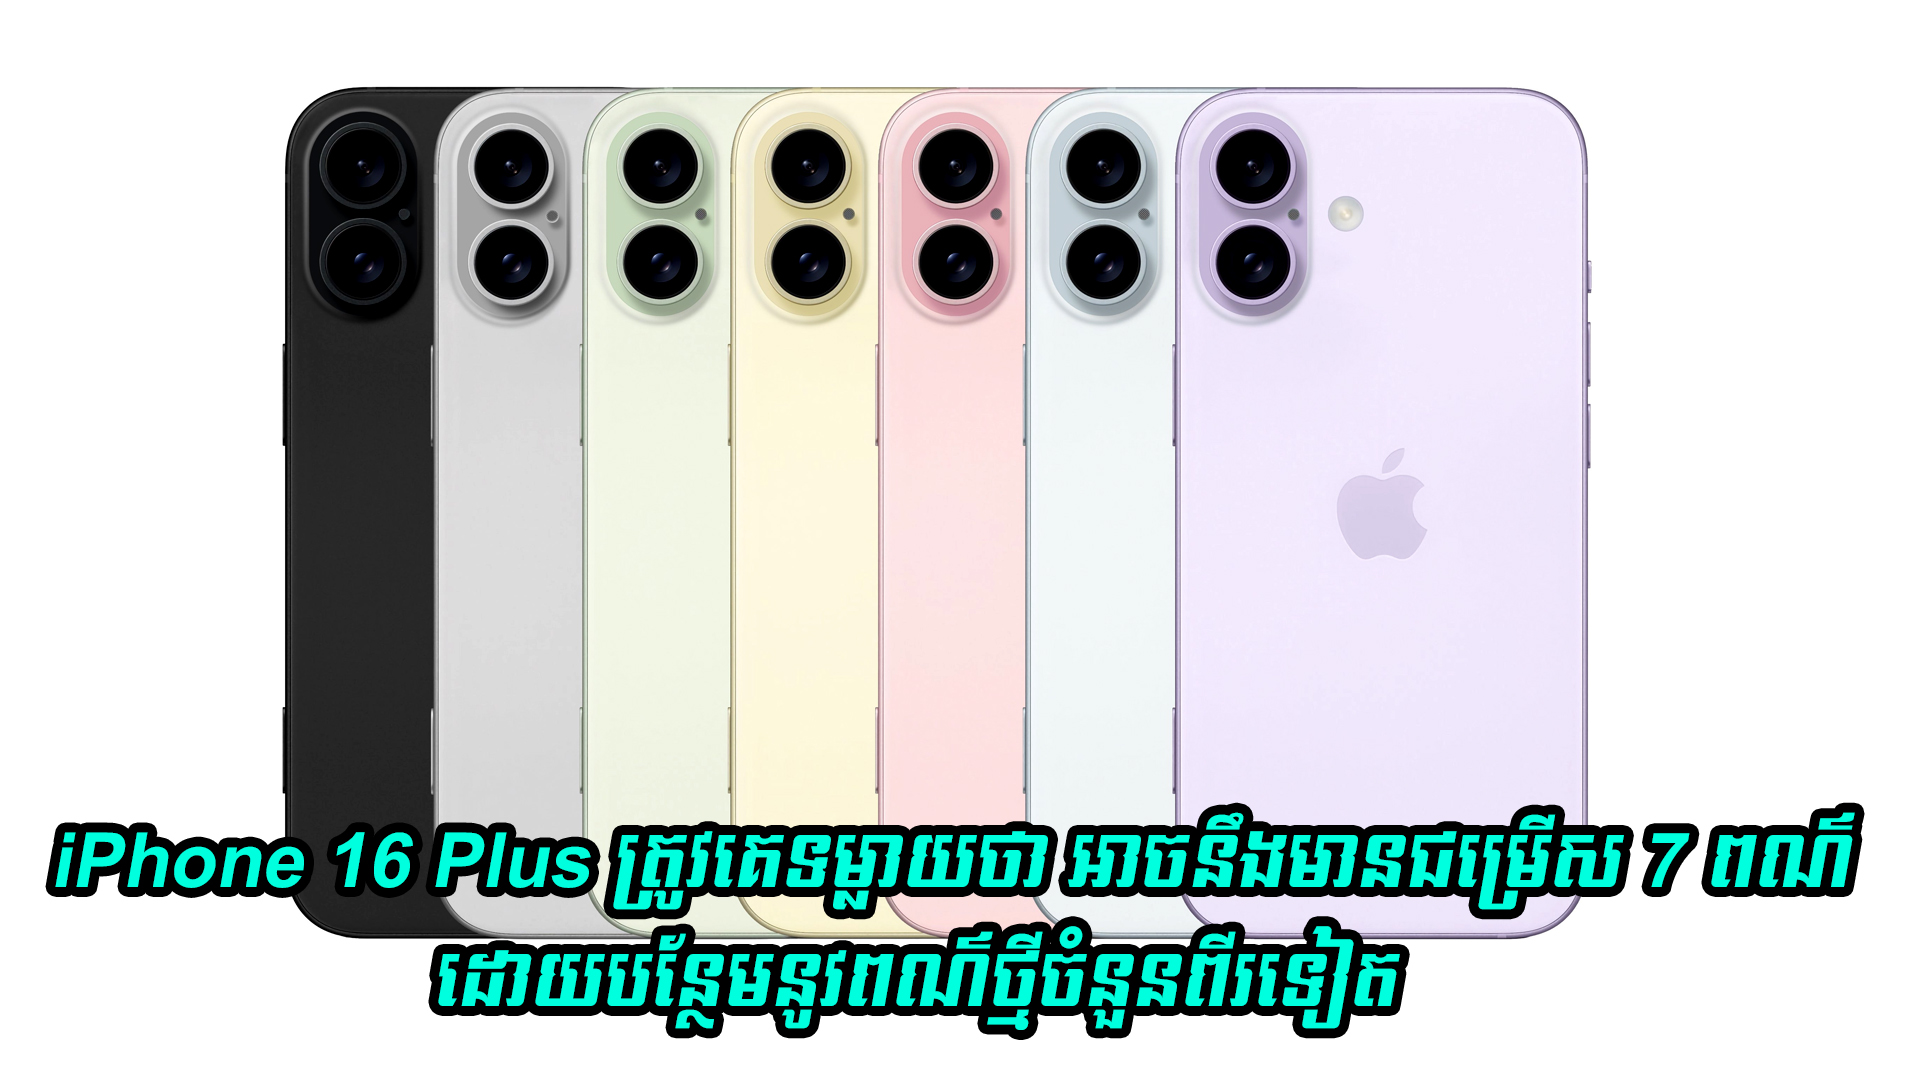 iPhone 16 Plus ត្រូវគេទម្លាយថា អាចនឹងមានជម្រើស 7 ពណ៌ ដោយបន្ថែមនូវពណ៌ថ្មីចំនួនពីរទៀត